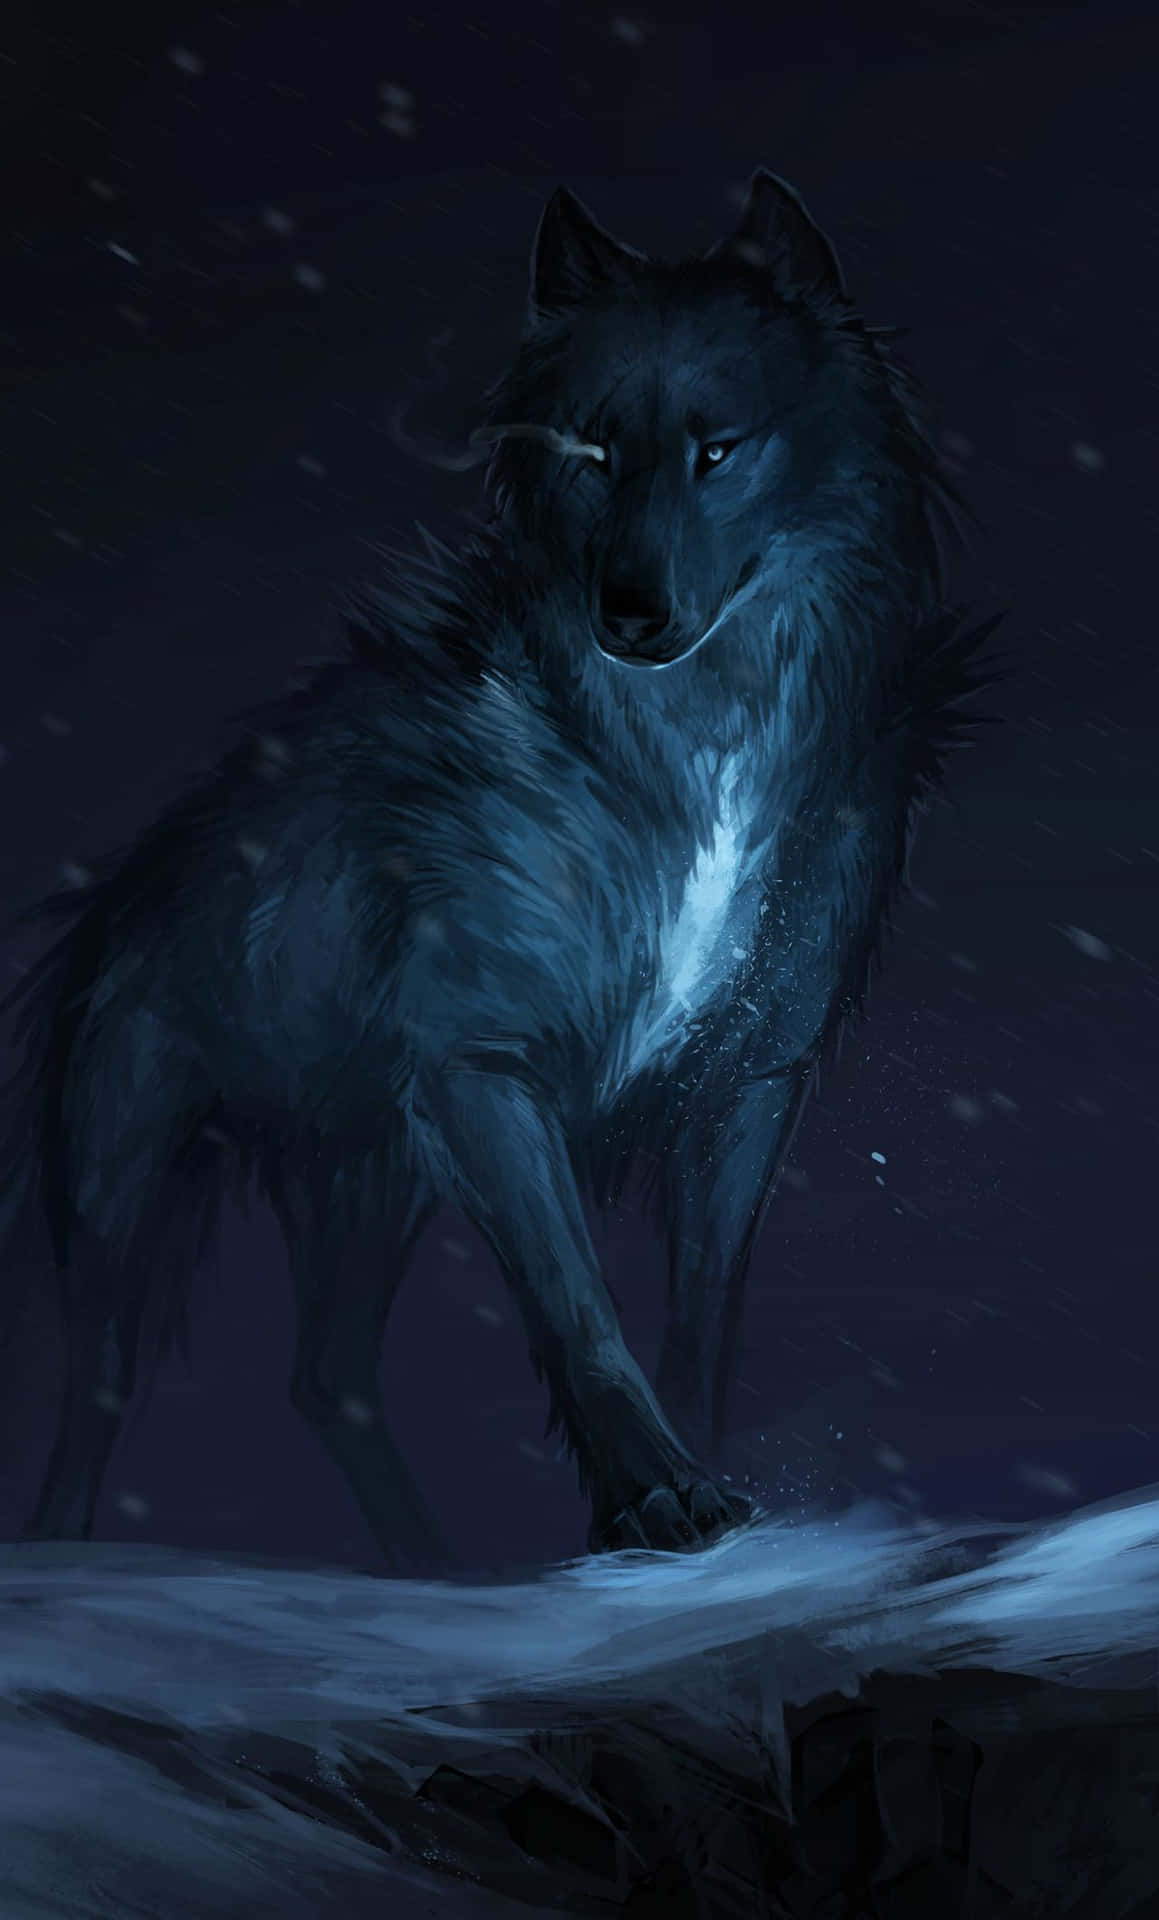 En smuk ulv hvisler om natten. Wallpaper